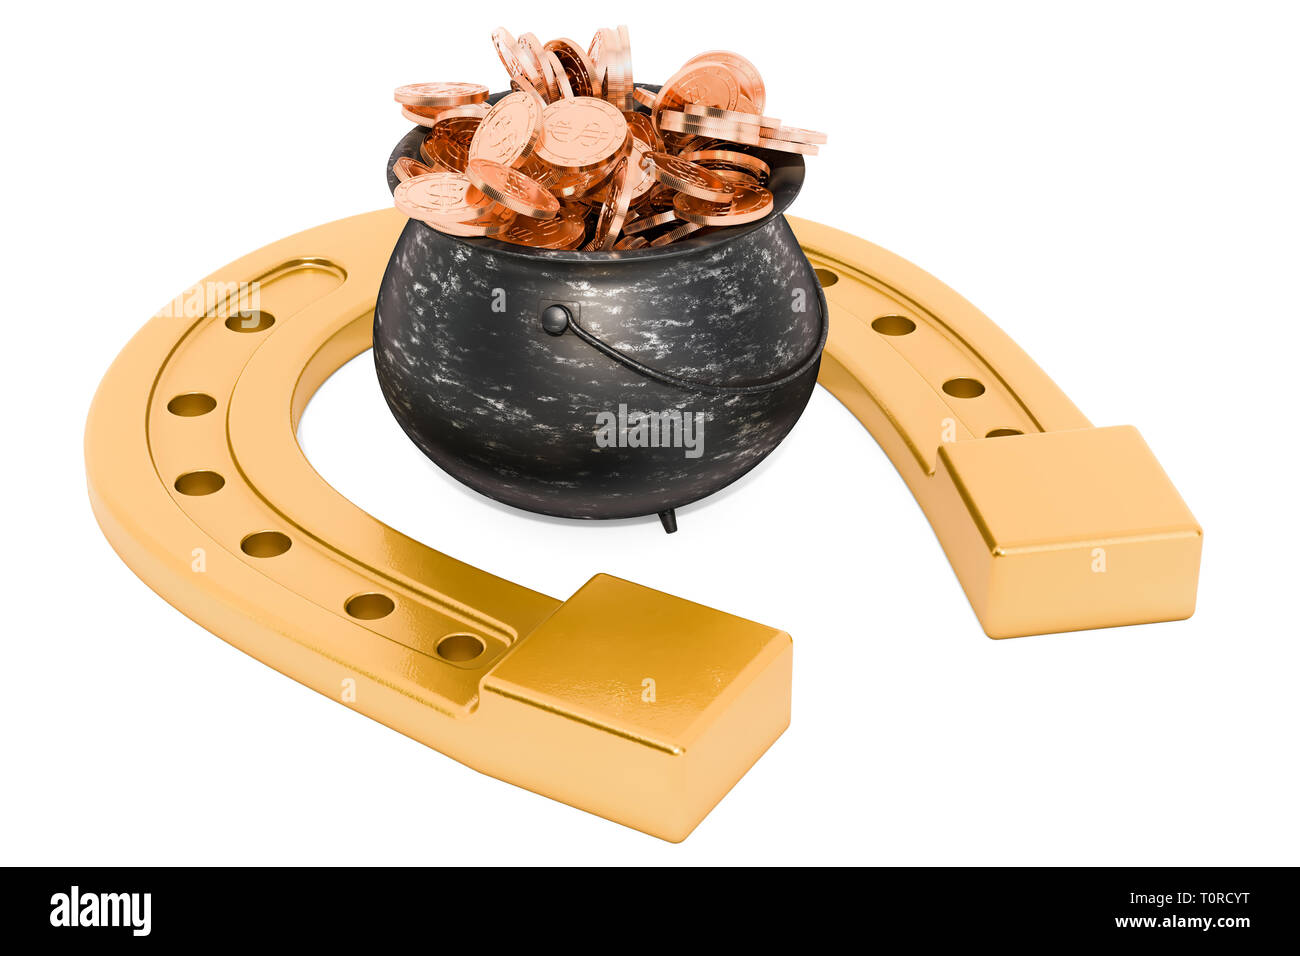 Hufeisen mit Topf voll goldenen Münzen, 3D-Rendering auf weißem Hintergrund Stockfoto